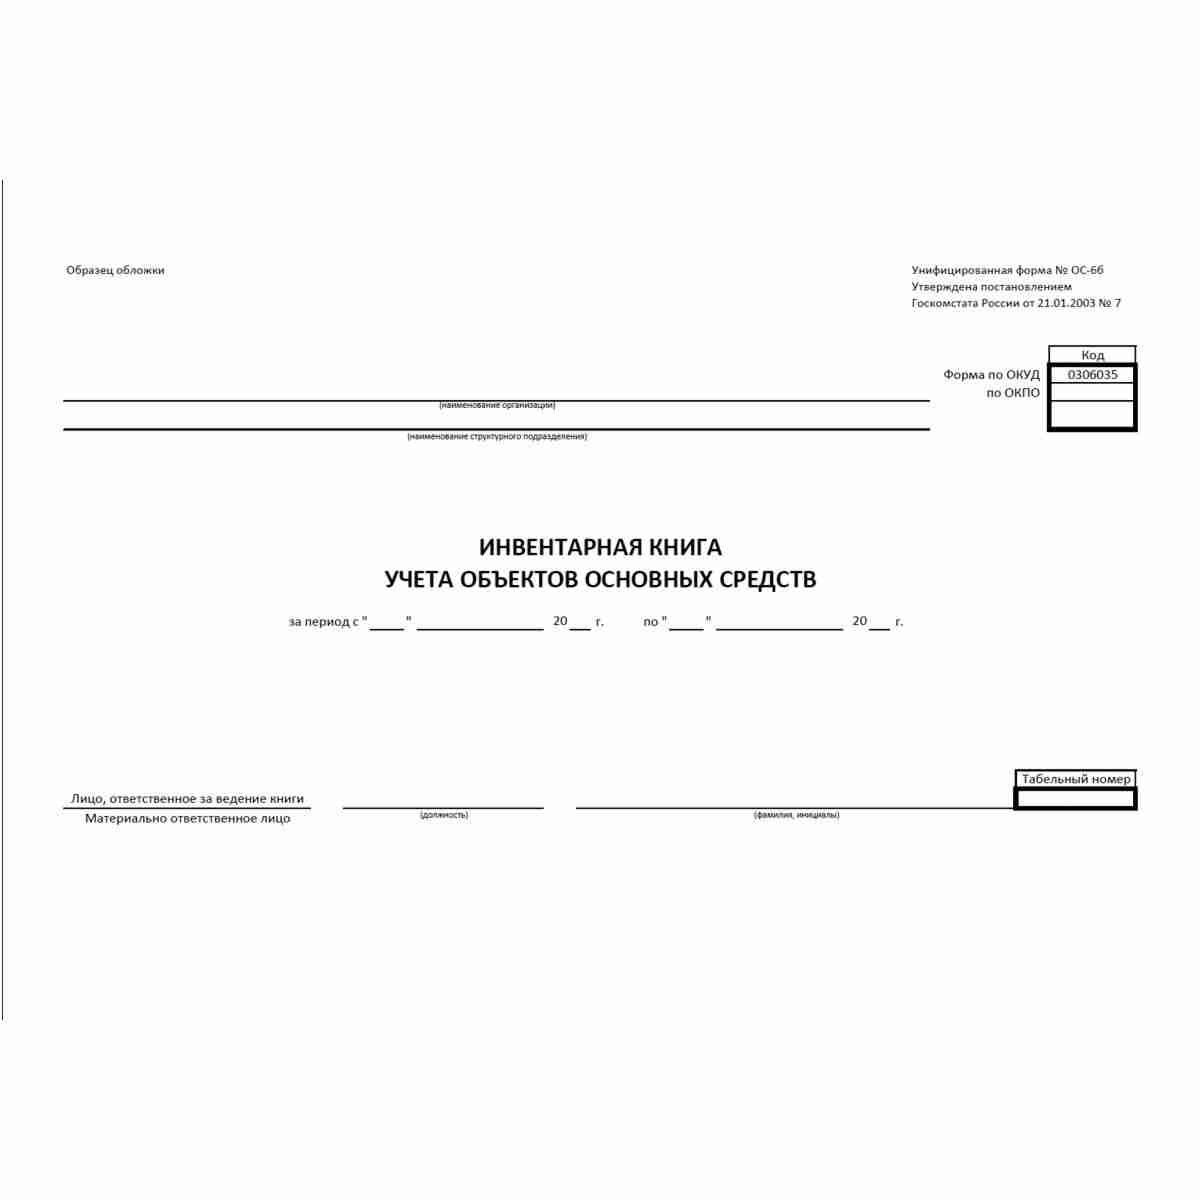 Унифицированная форма первичной учетной документации № ОС-6б "Инвентарная книга учета объектов основных средств" (ОКУД 0306035). Обложка